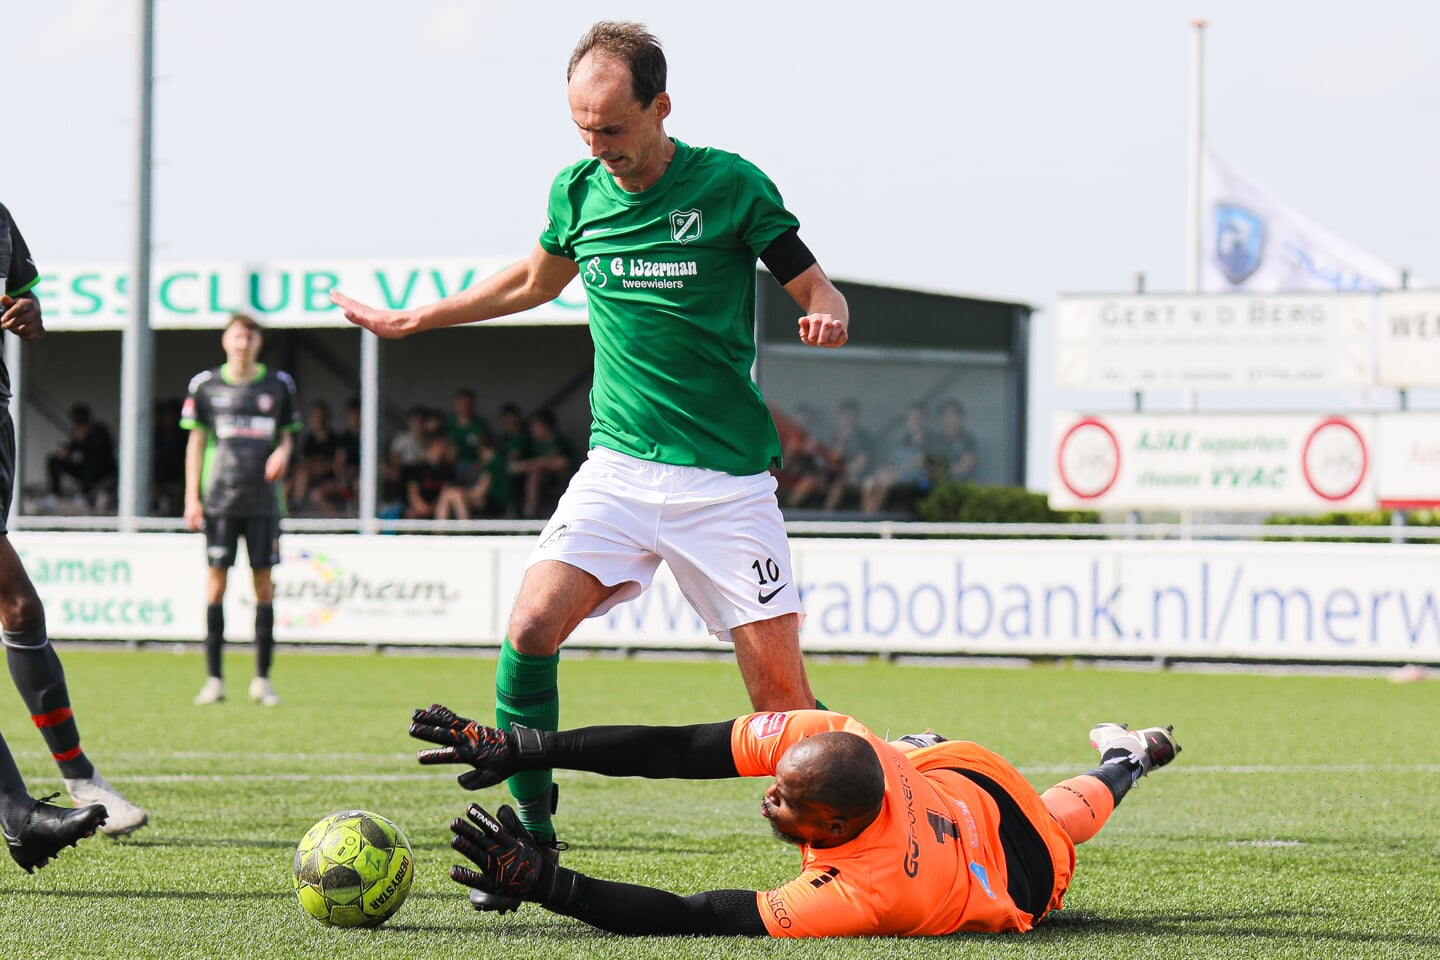 • VVAC - FC Dordrecht AM (5-0).